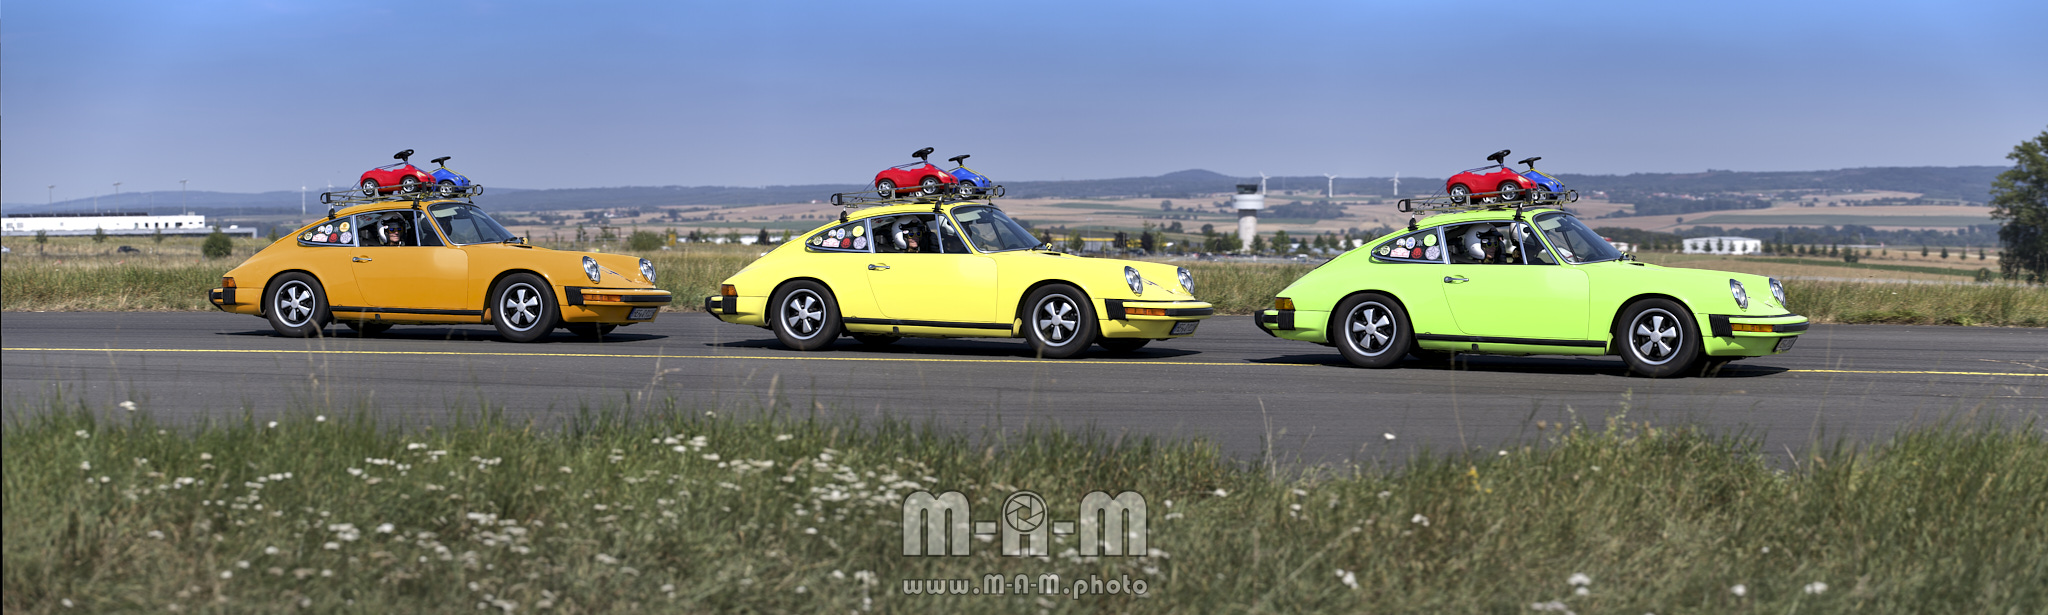 3x Porsche 911 beim Flugplatzrennen Calden - Timelapse